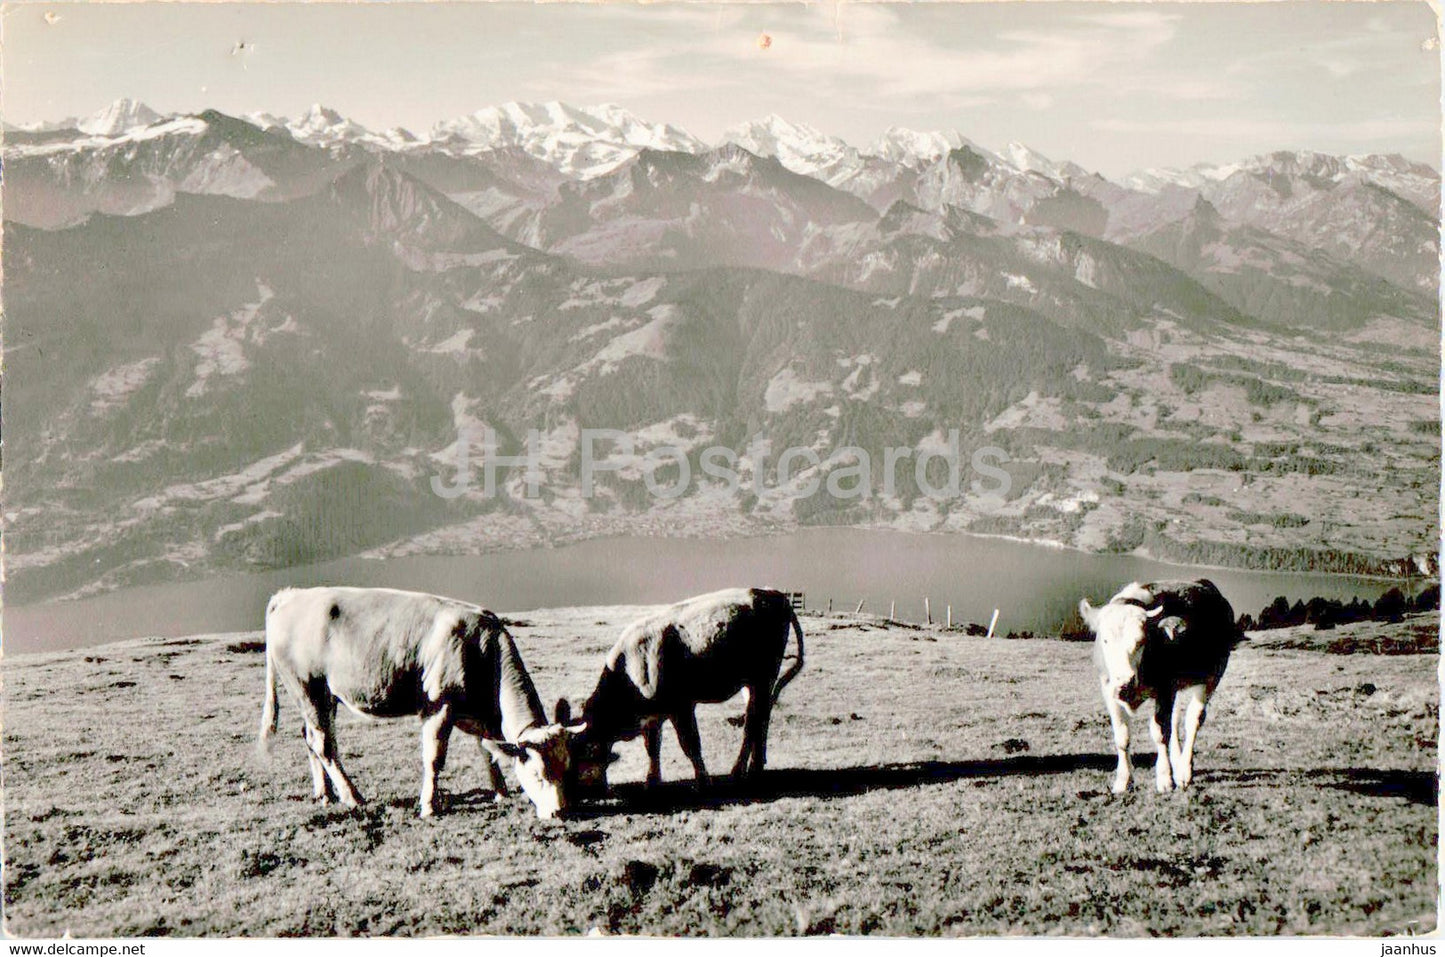 Viehweide auf dem Niederhorn b Beatenberg - Thunersee - animals - cow - 19354 - old postcard - Switzerland - used - JH Postcards